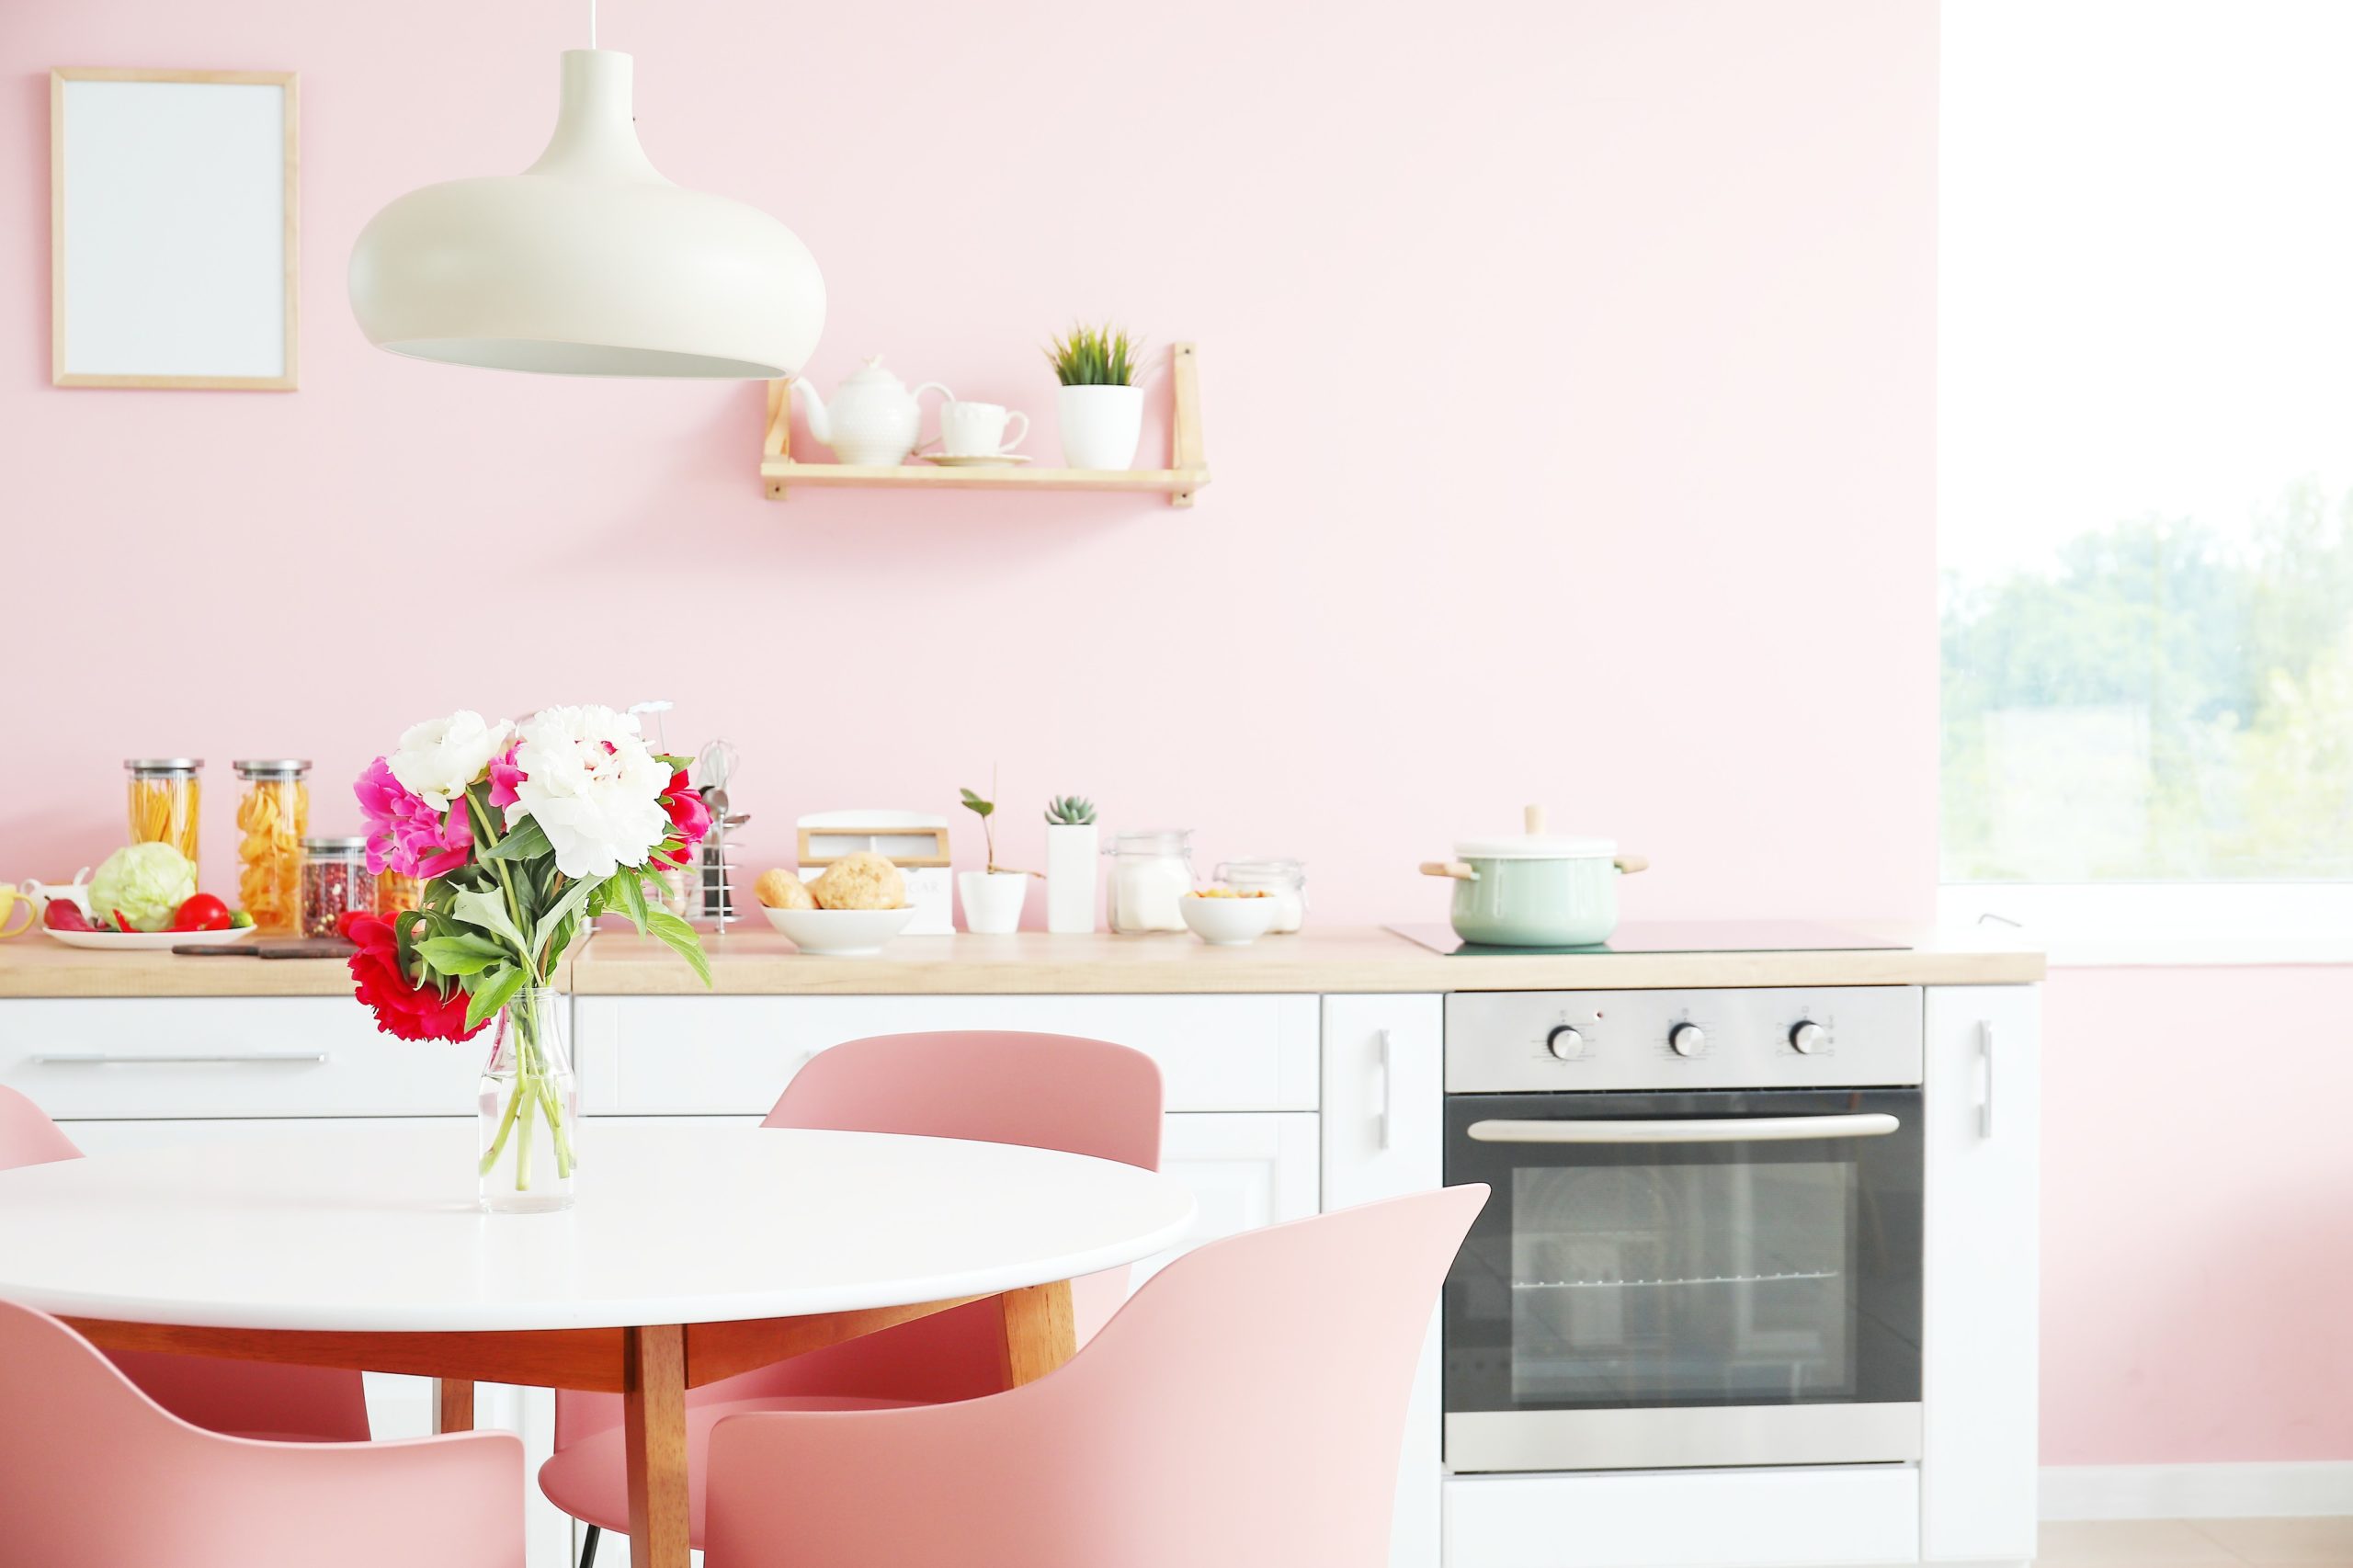 <img src="pink.jpg" alt="pink girly kitchen"/> 